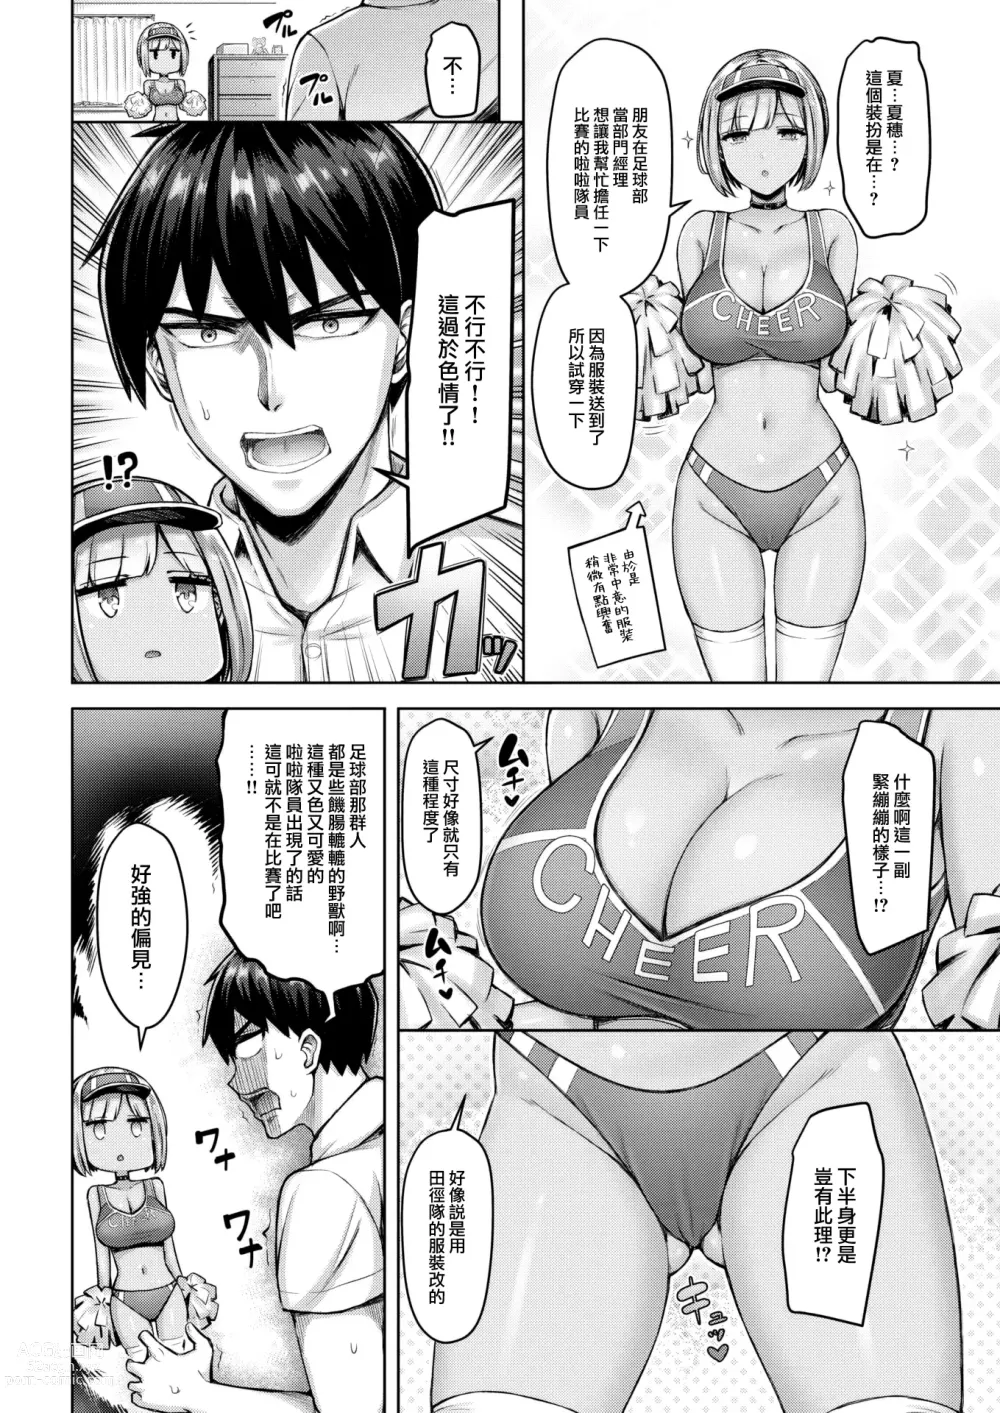 Page 5 of manga Onii-chan wa Yurusanzo!!